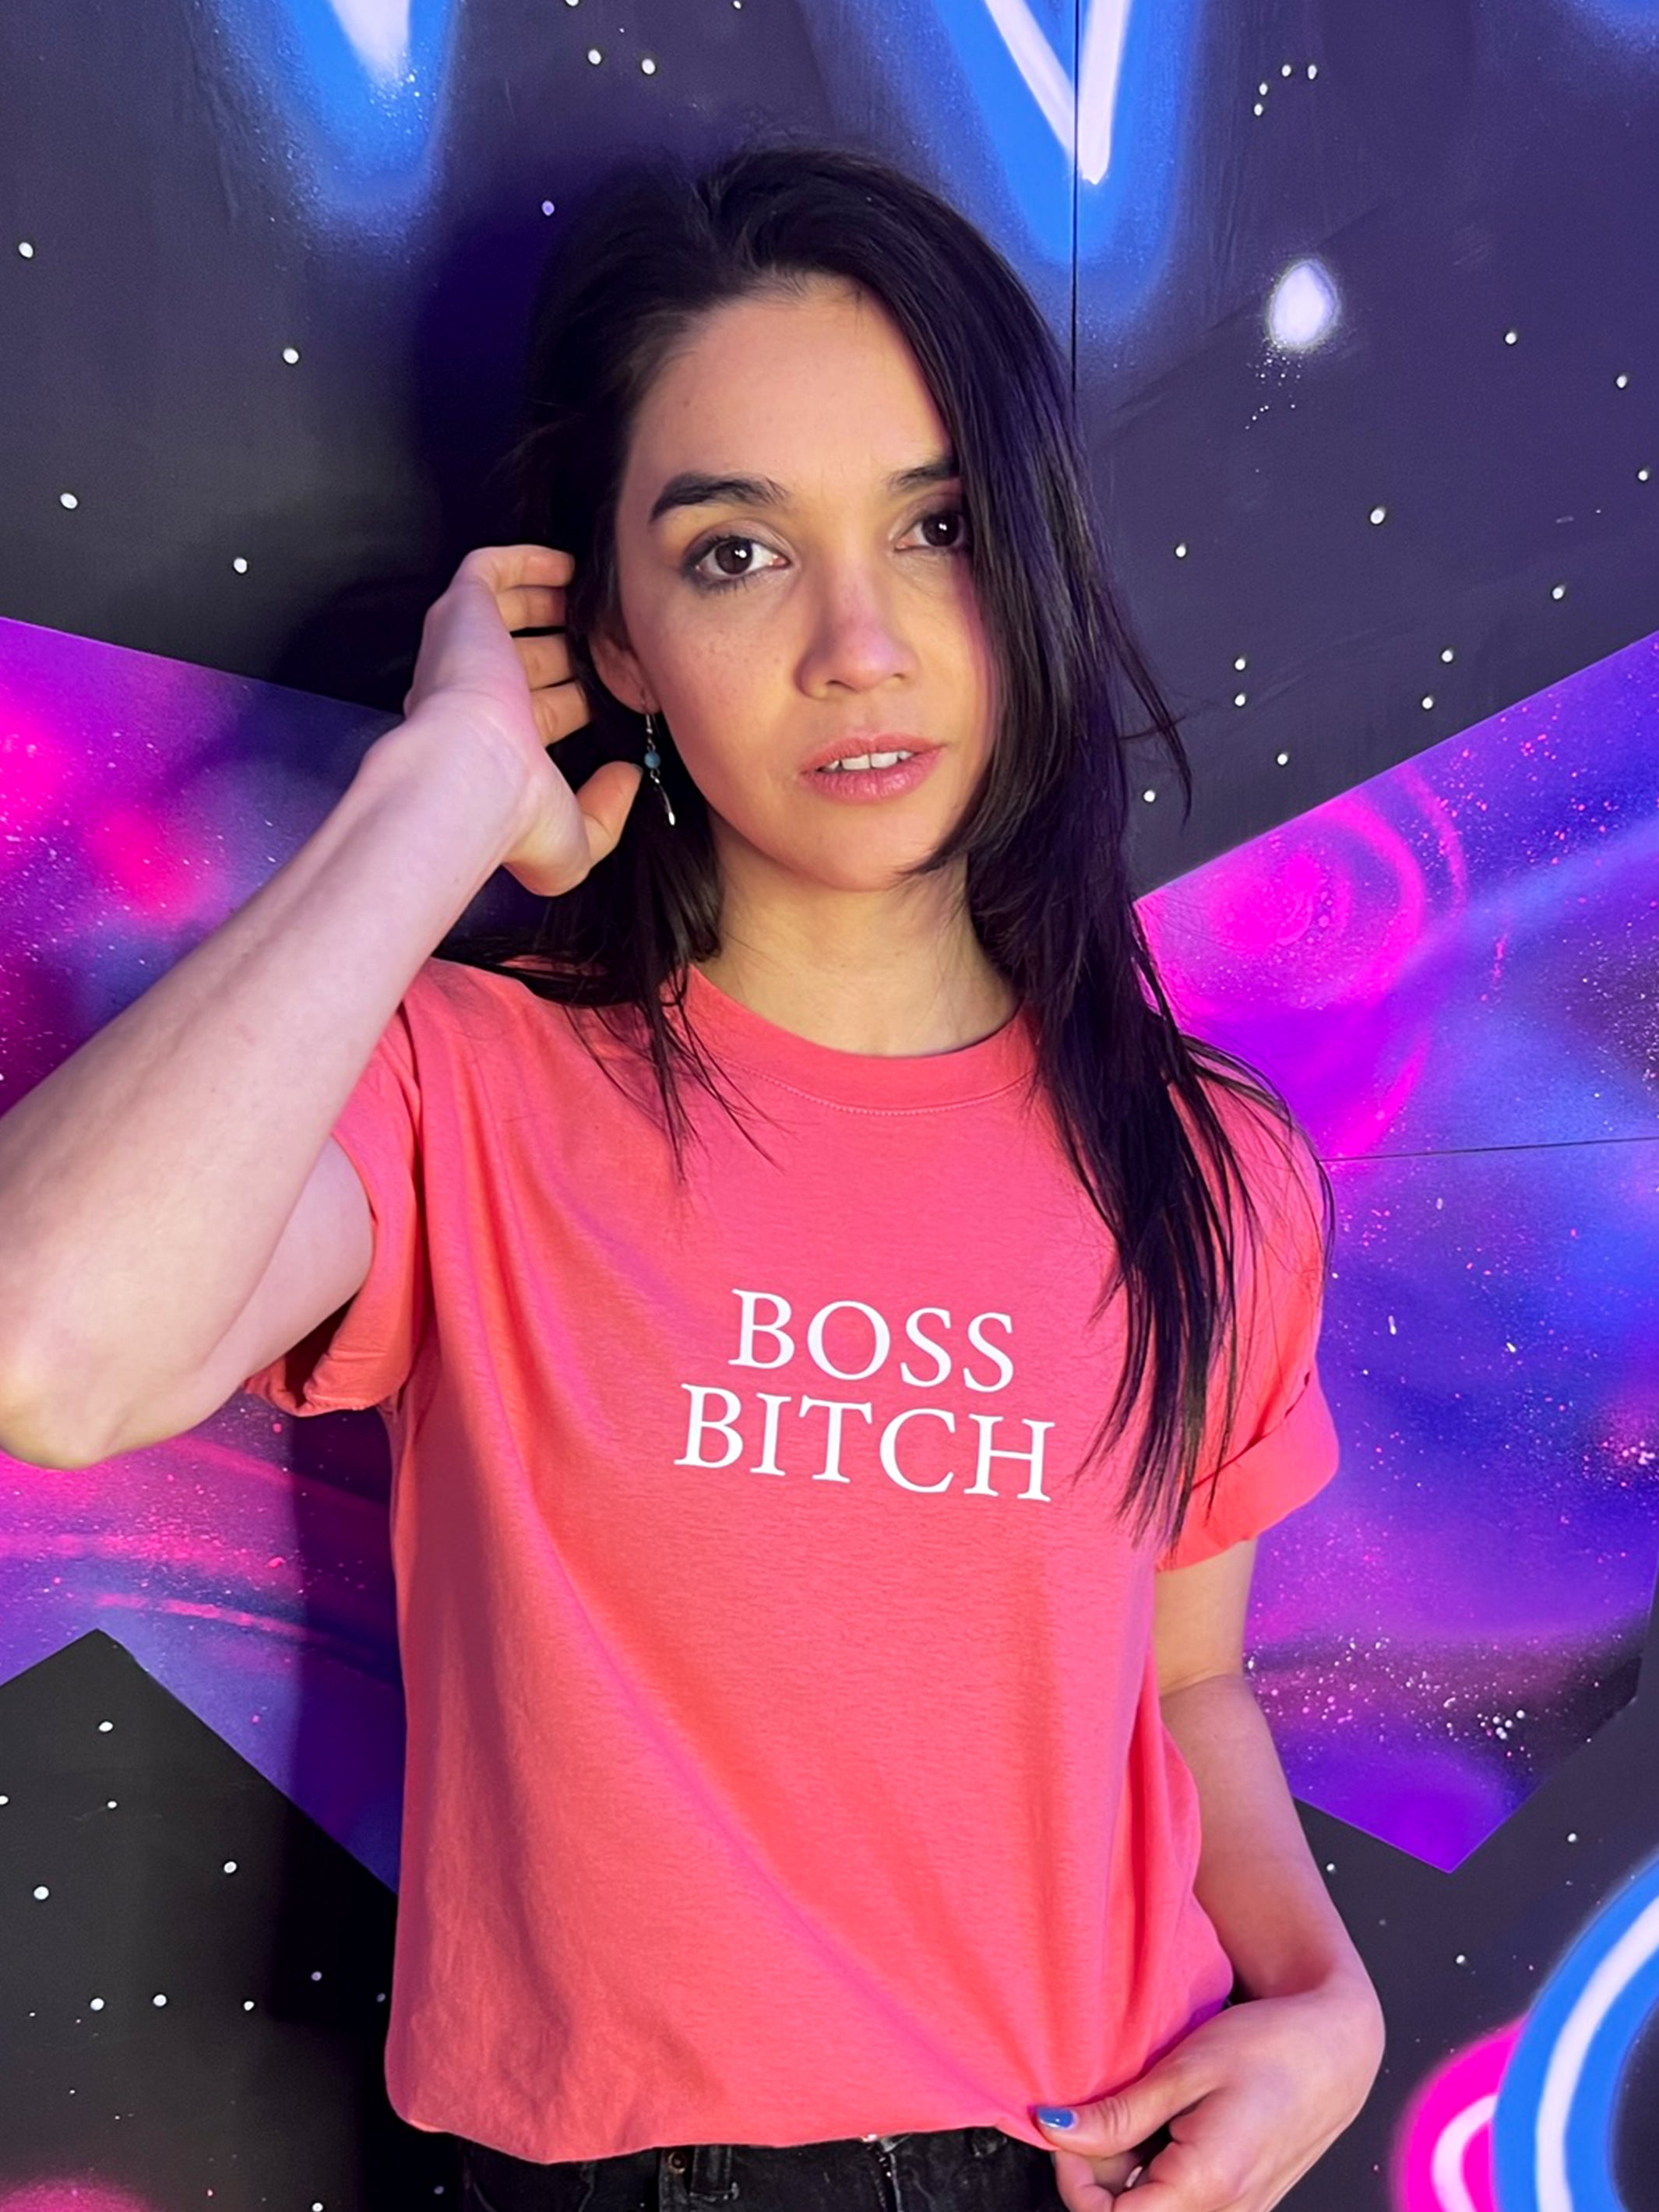 Playera Boss Bitch